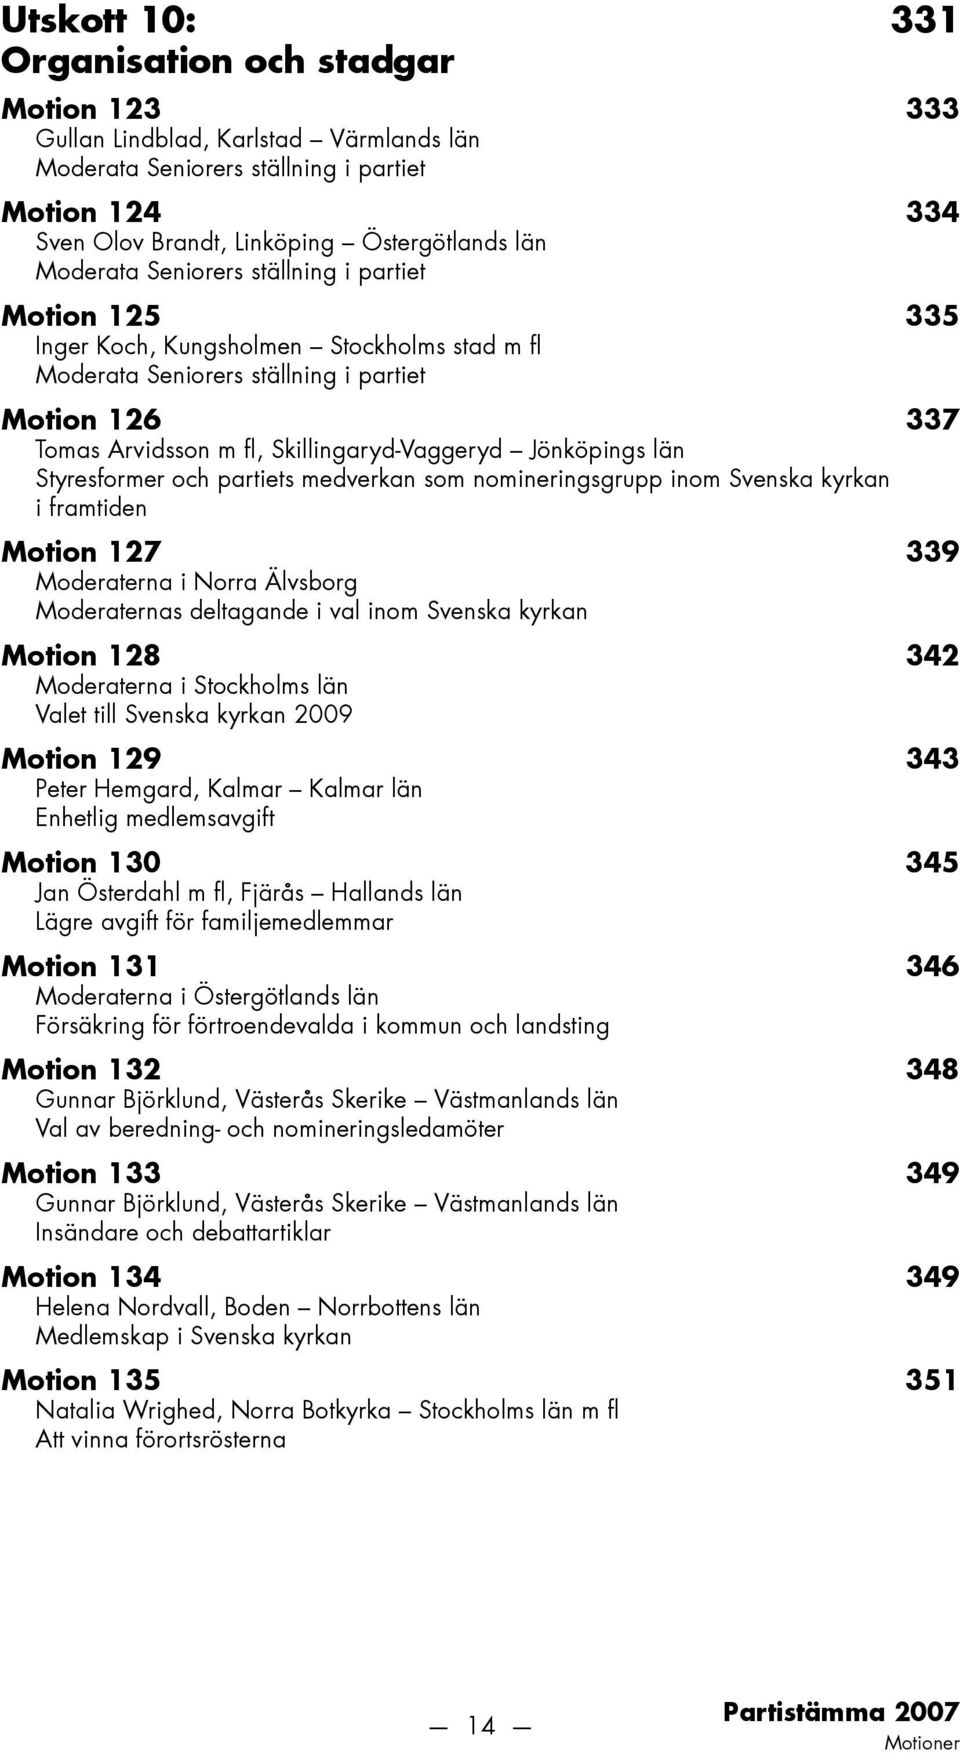 Jönköpings län Styresformer och partiets medverkan som nomineringsgrupp inom Svenska kyrkan i framtiden Motion 127 339 Moderaterna i Norra Älvsborg Moderaternas deltagande i val inom Svenska kyrkan